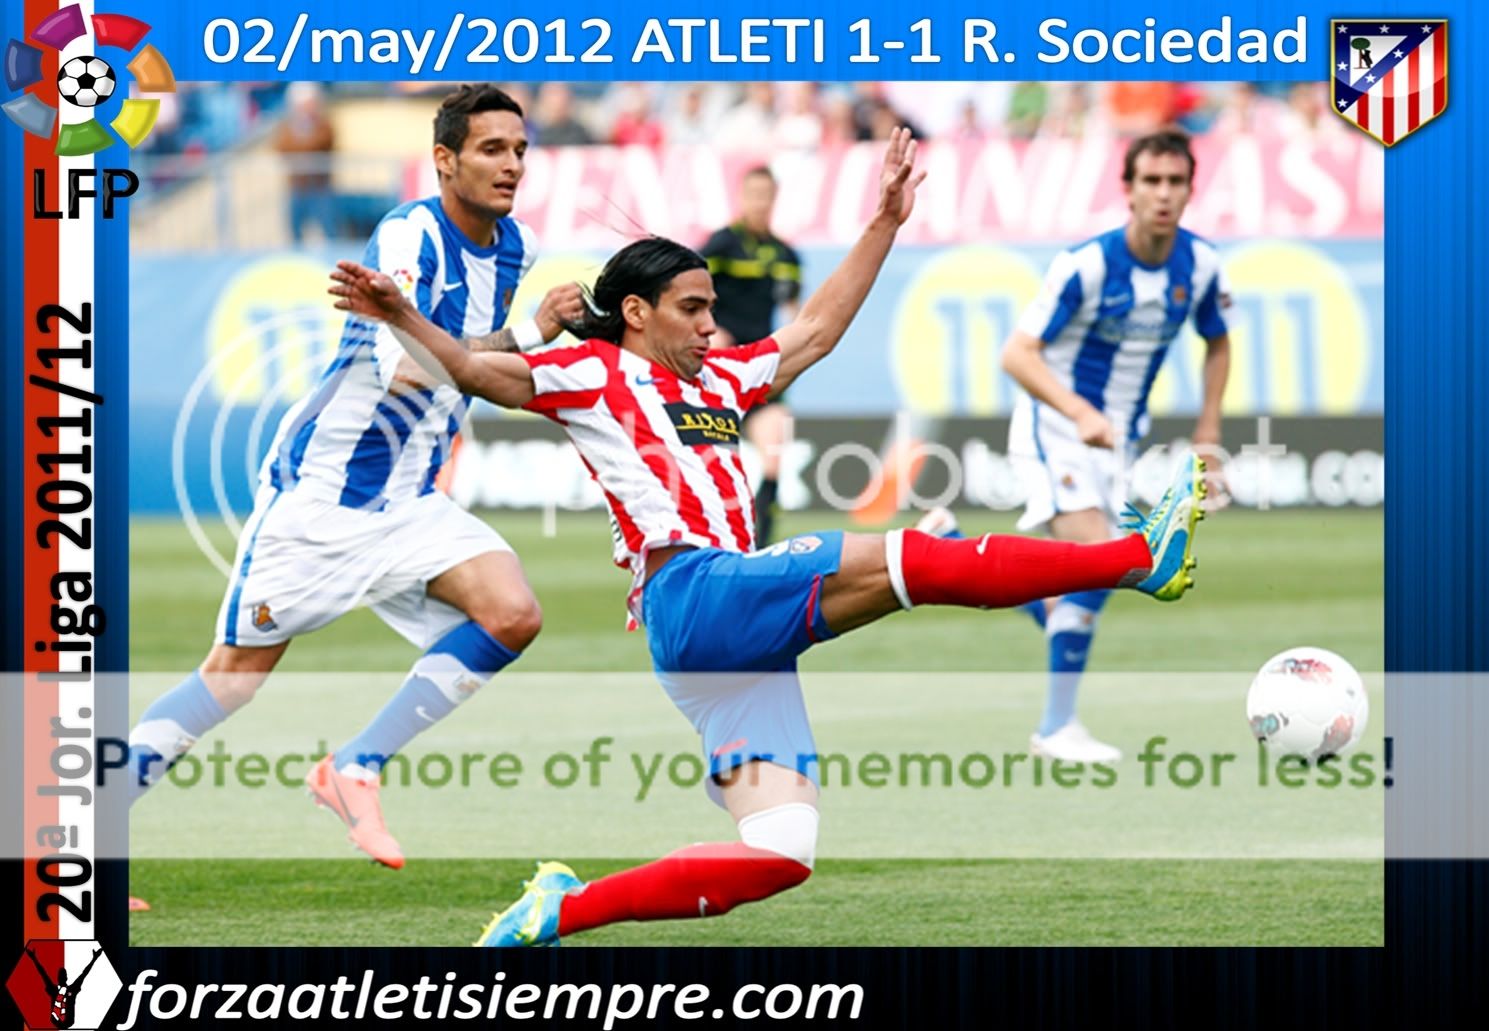 20ª Jor.(aplazada) liga 2011/12 ATLETI 1-1 R. Soc.-El Atlético no quiere... 012Copiar-11